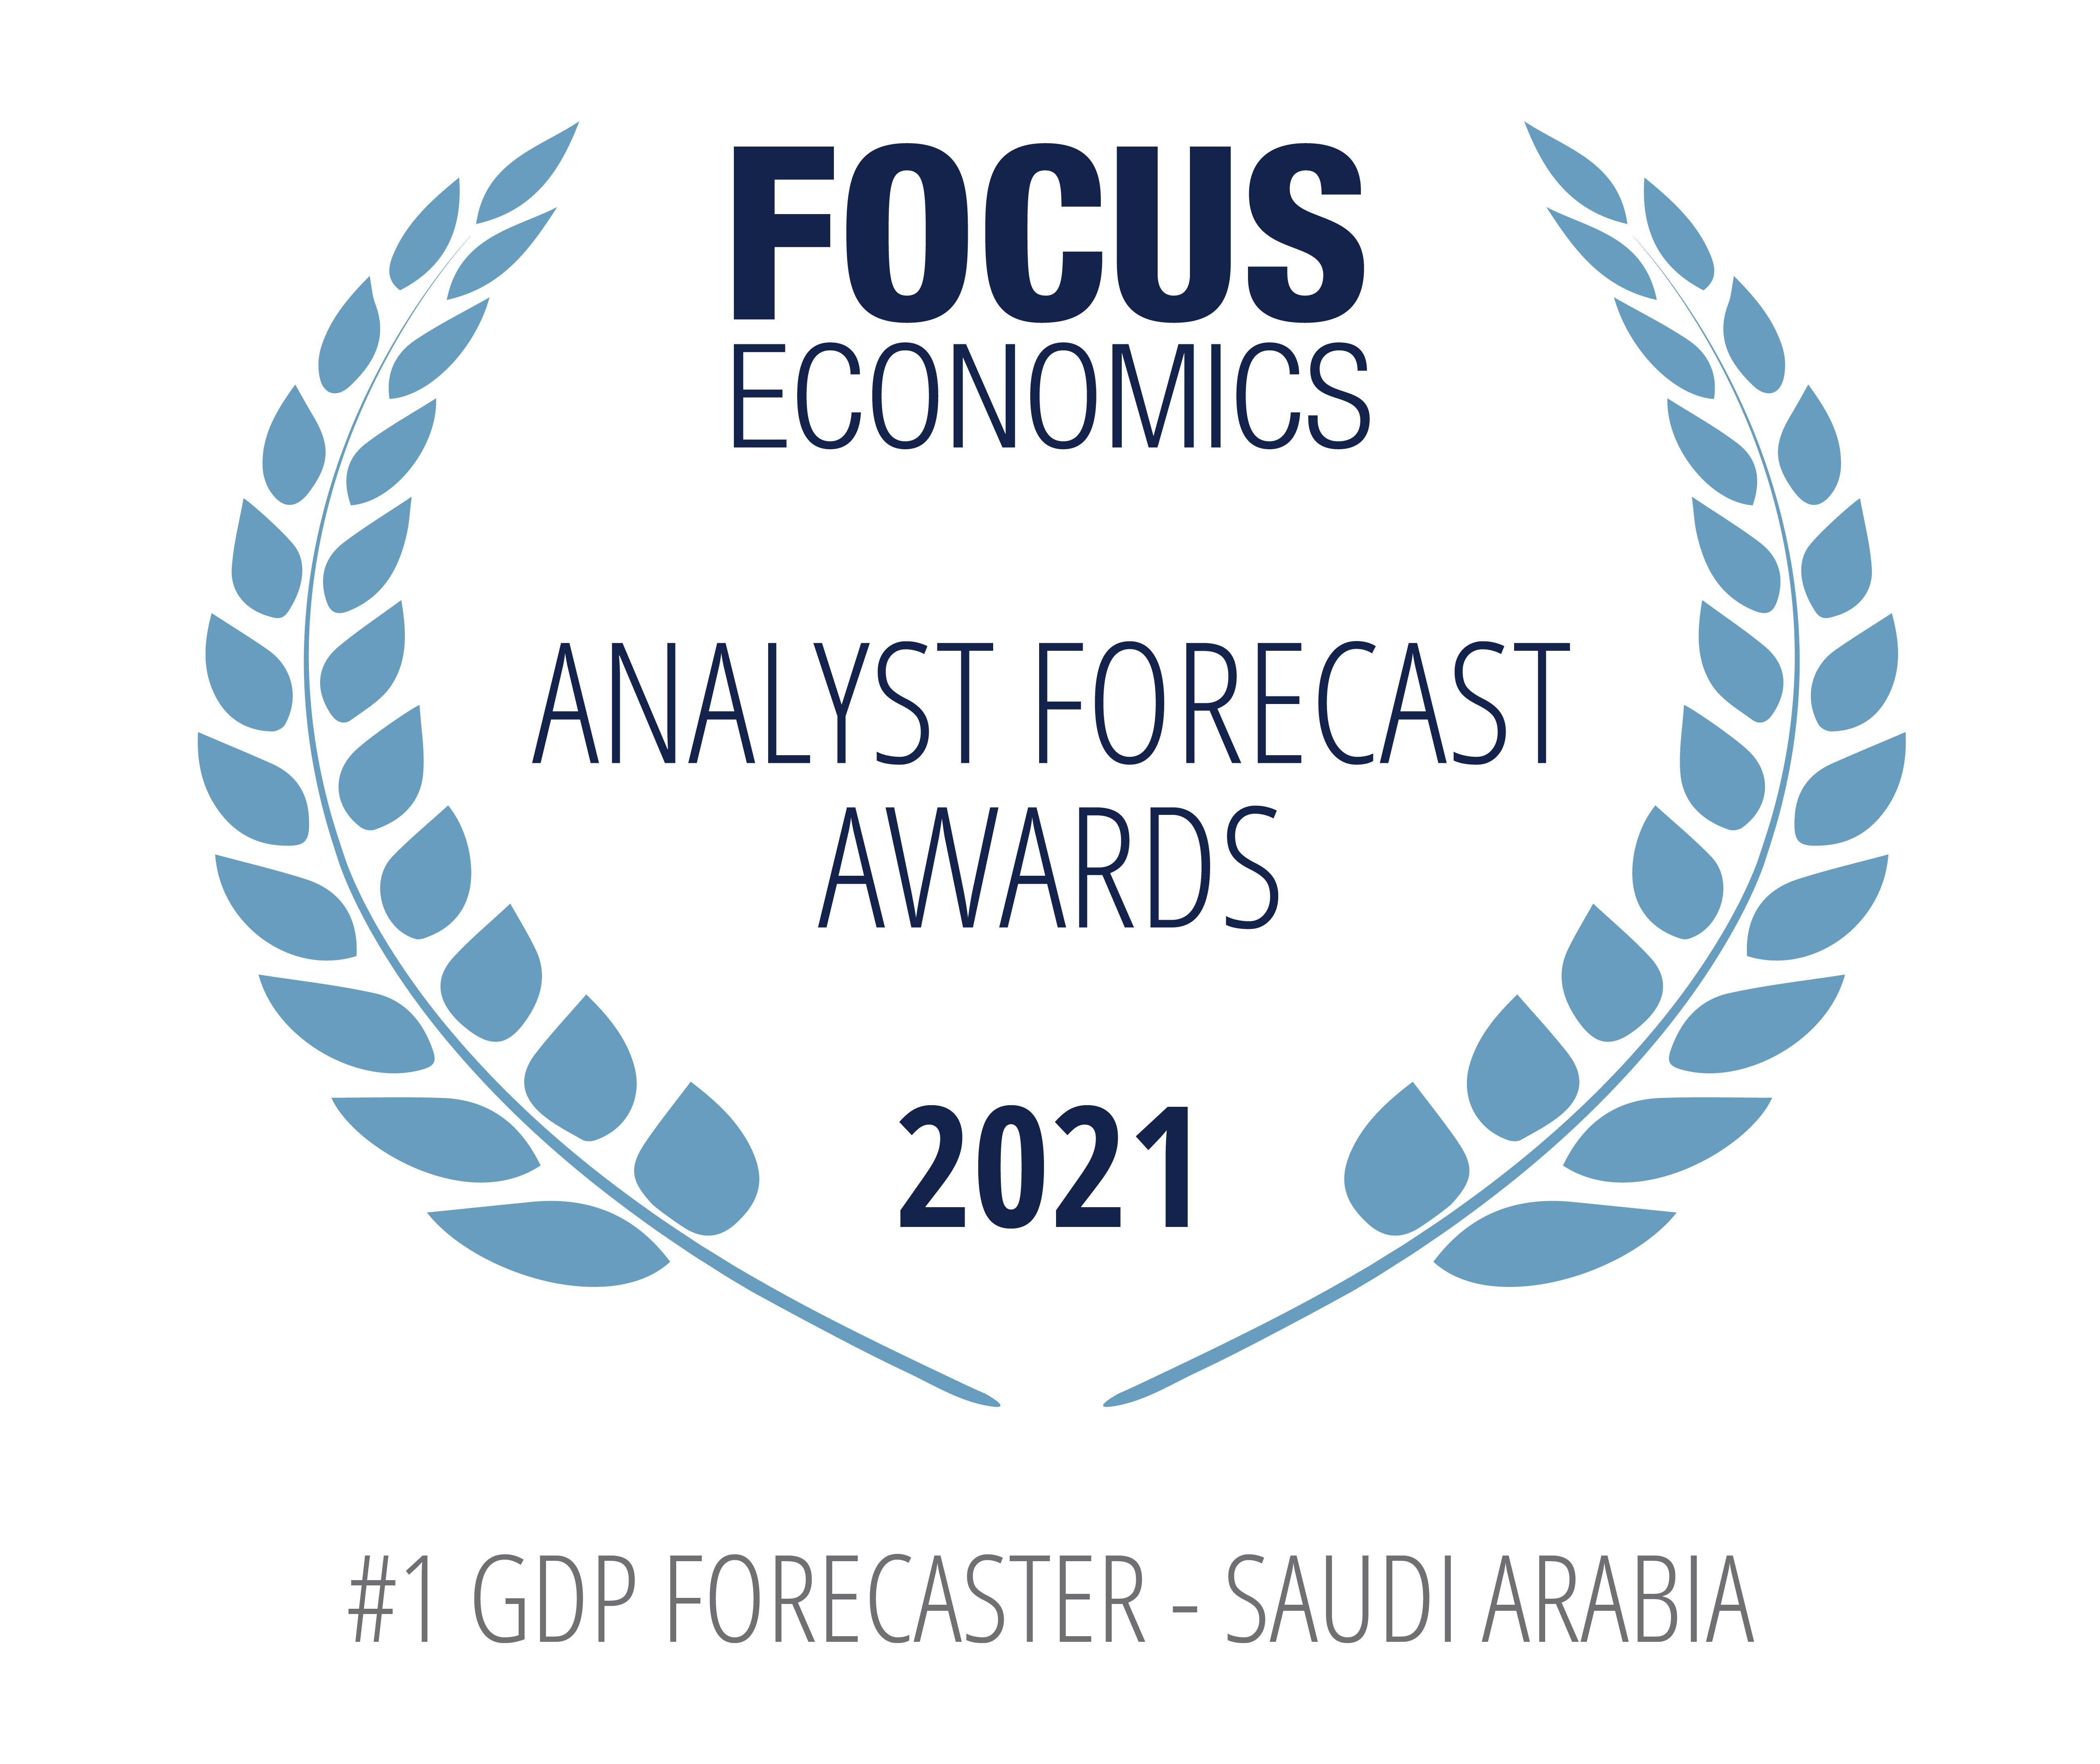 أفضل متنبئ لإجمالي الناتج المحلي – السعودية جوائز فوكس إيكونوميكس، 2021